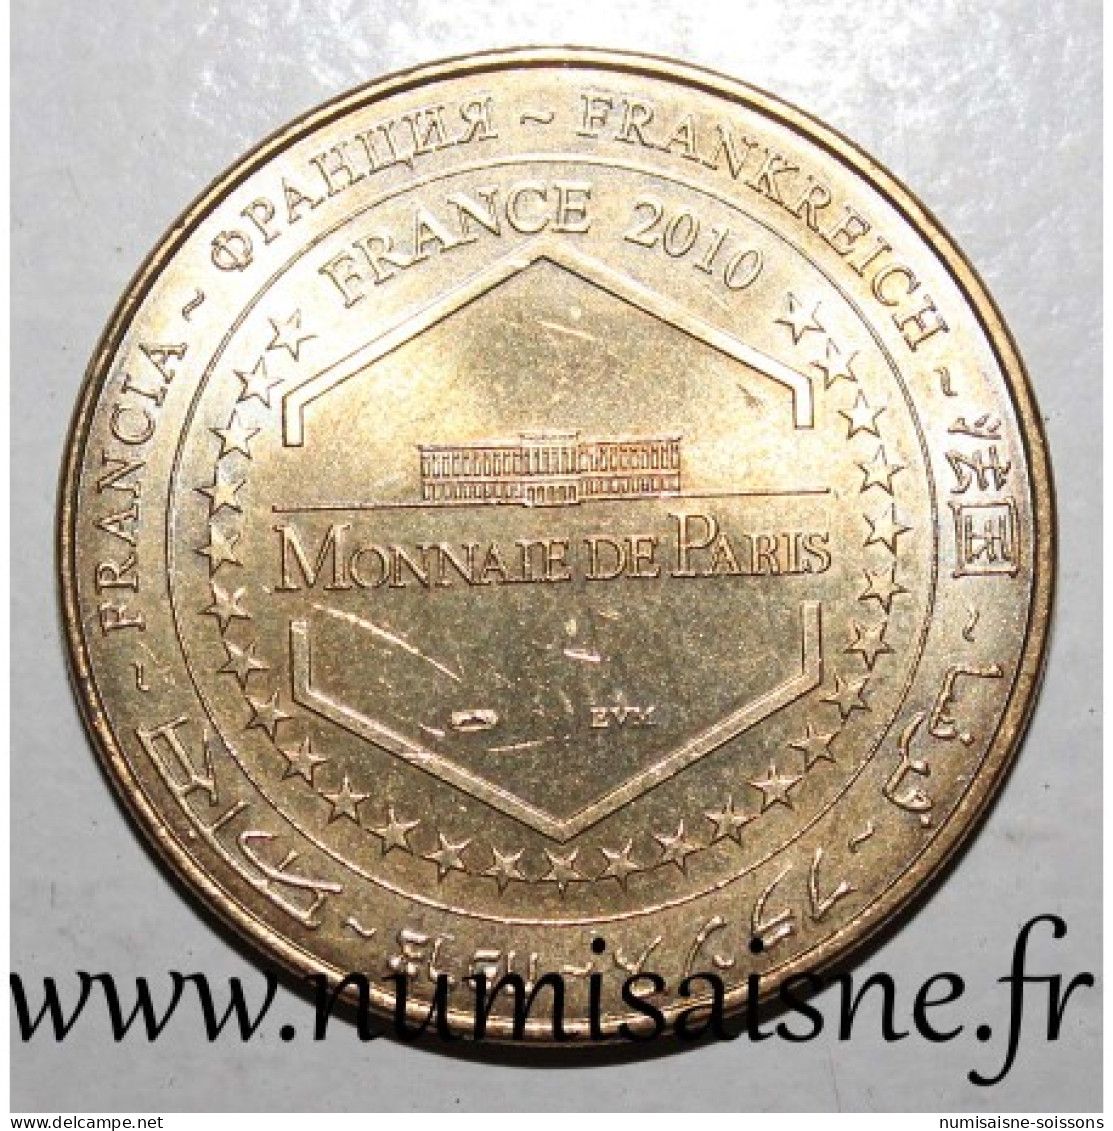 30 - UZES - MUSÉE DU BONBON HARIBO - Monnaie De Paris - 2010 - 2010